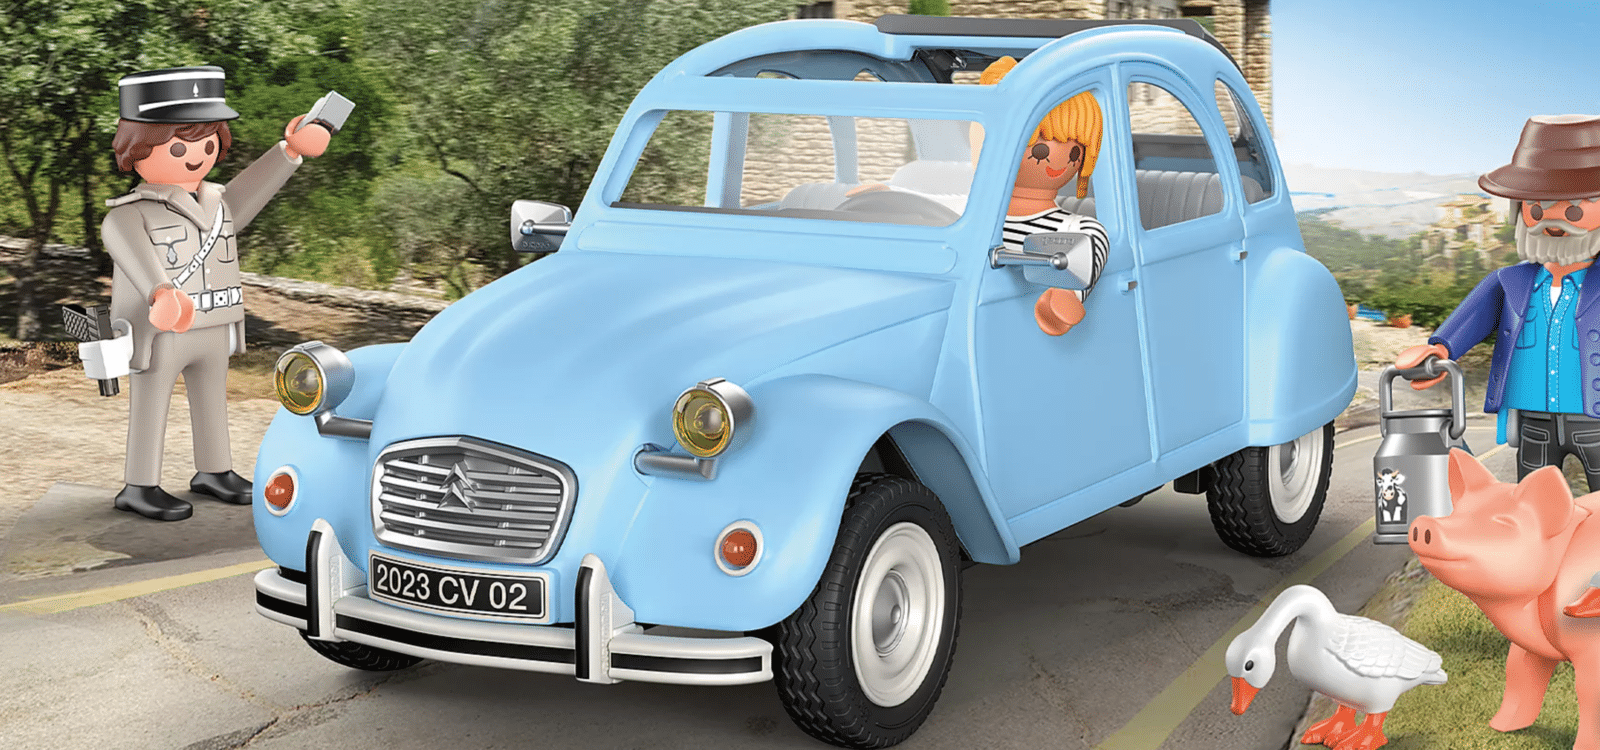 Citroën 2CV : voici le sympathique jouet Playmobil - Les Voitures